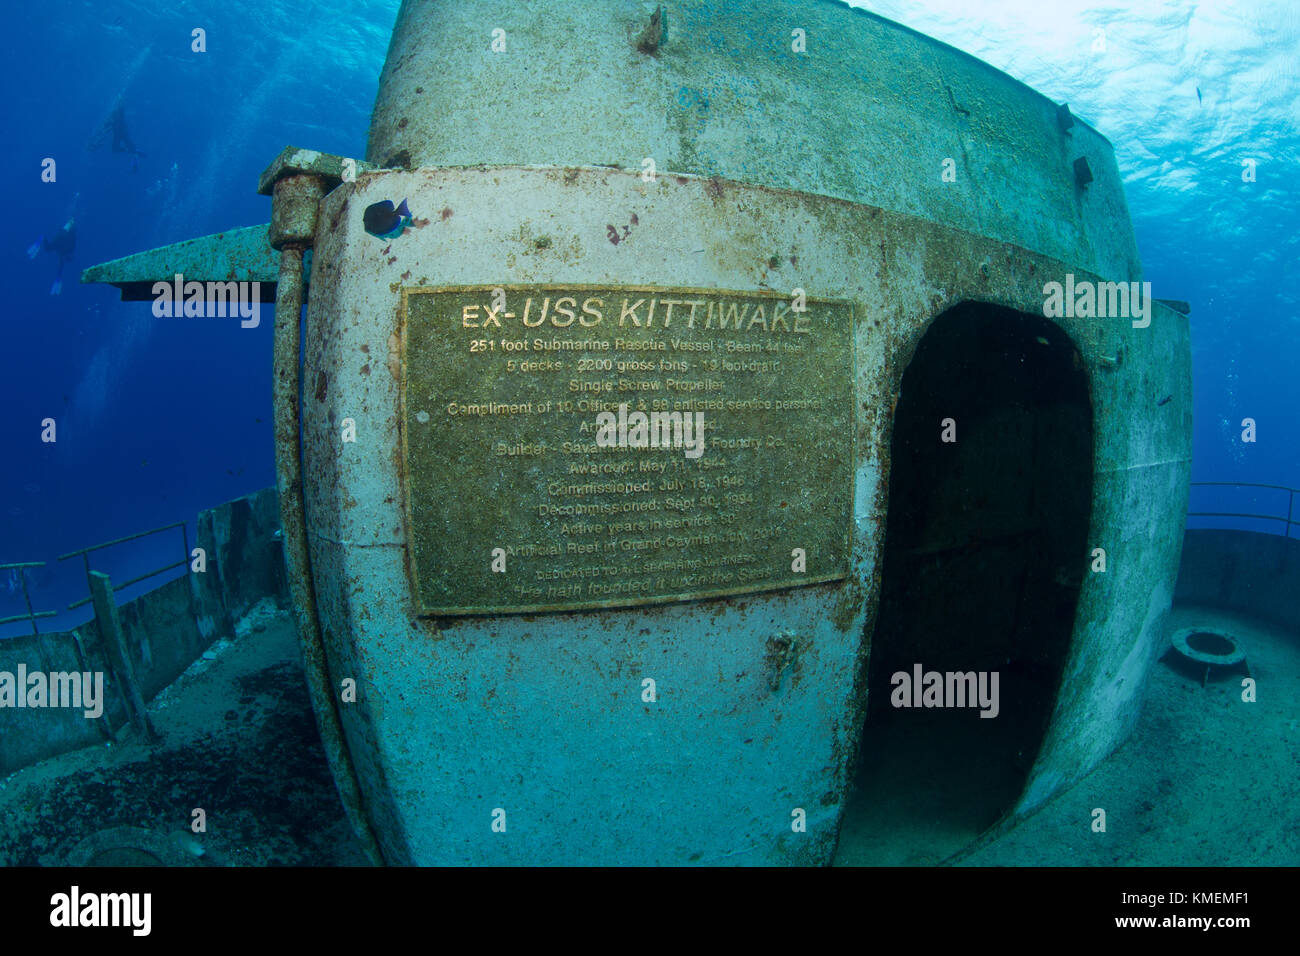 Una foto di uno della placca sulla USS kittiwake, un reef artificiale. Foto Stock